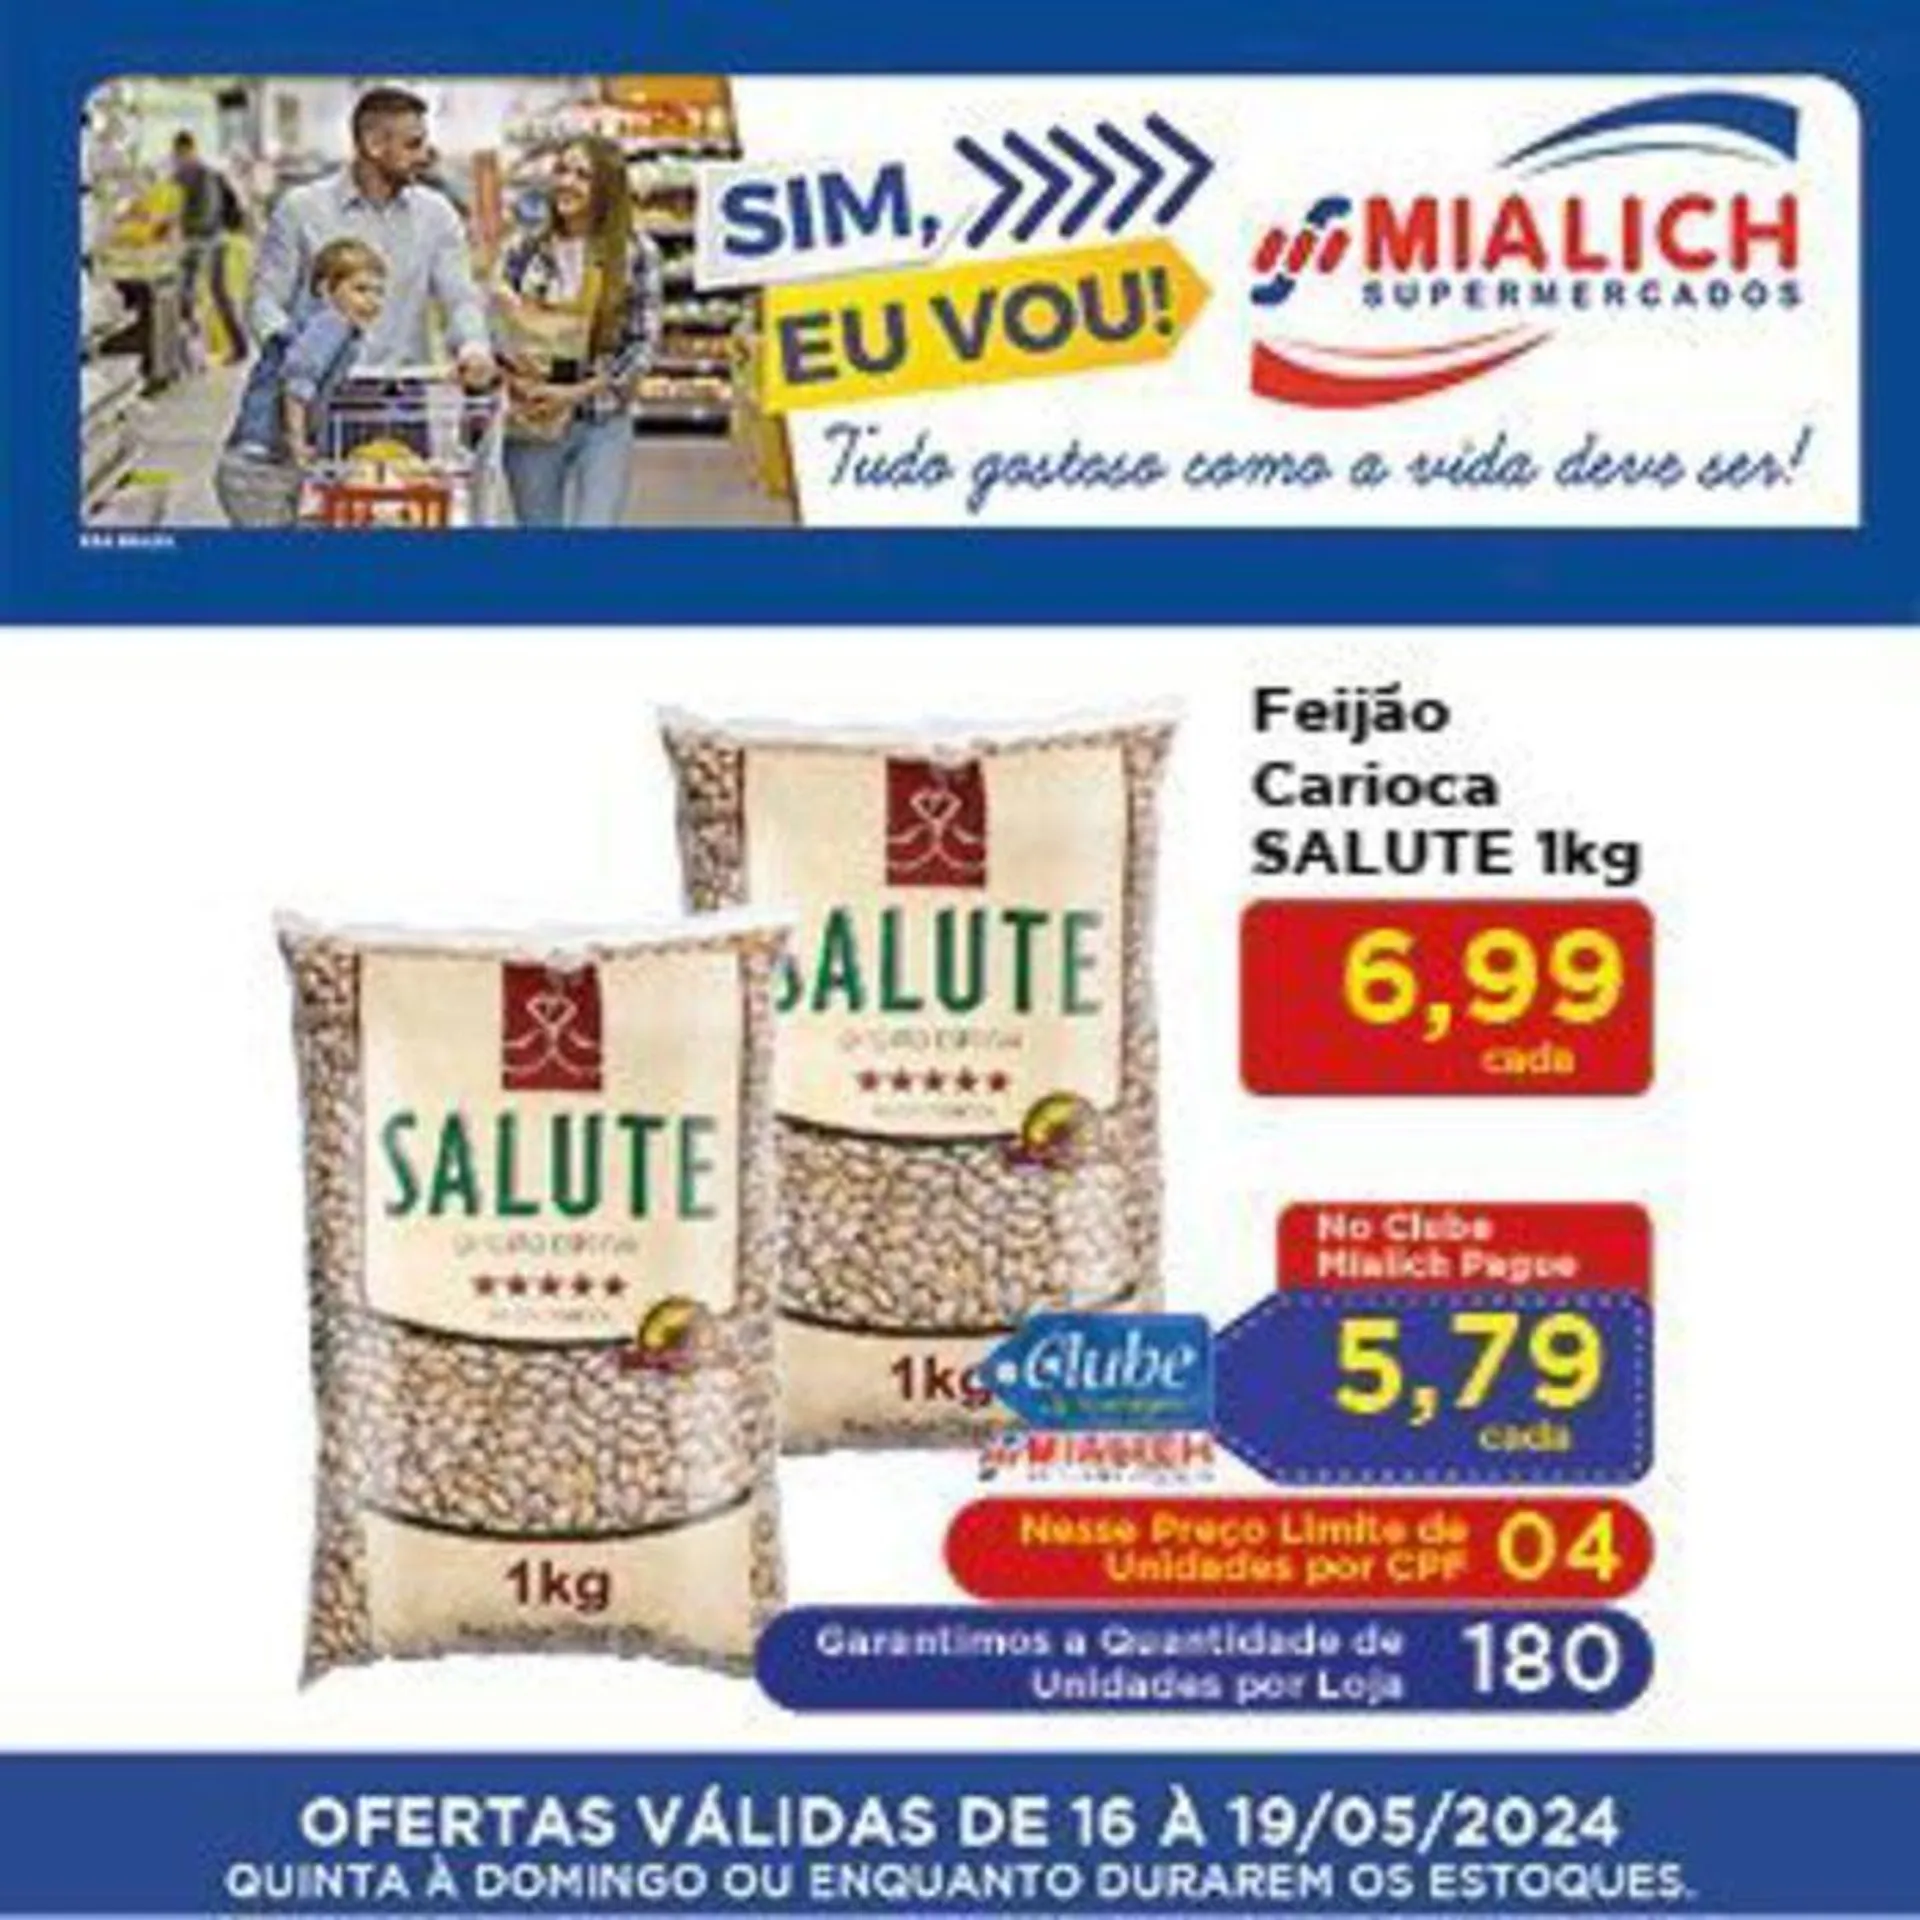 Oferta Mialich Supermercados - 1